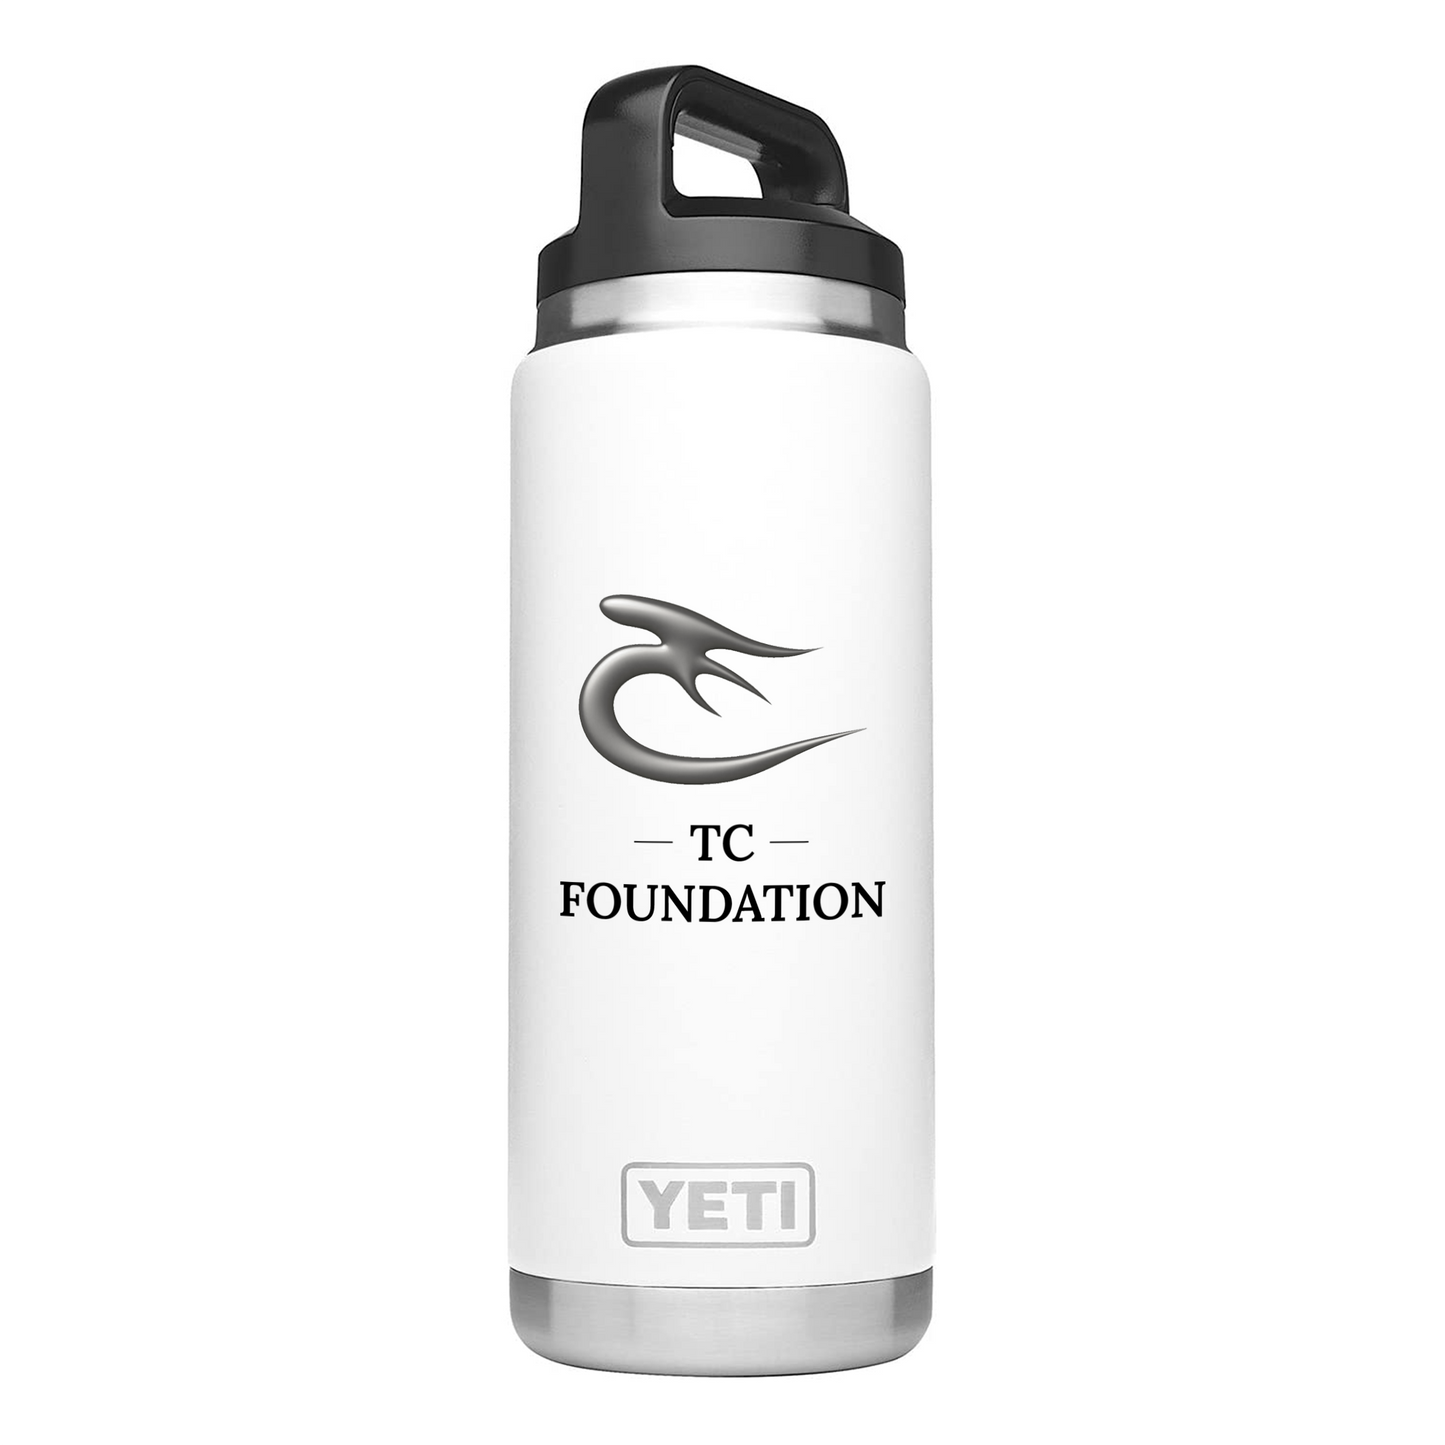 TC Foundation Yeti Water Bottle